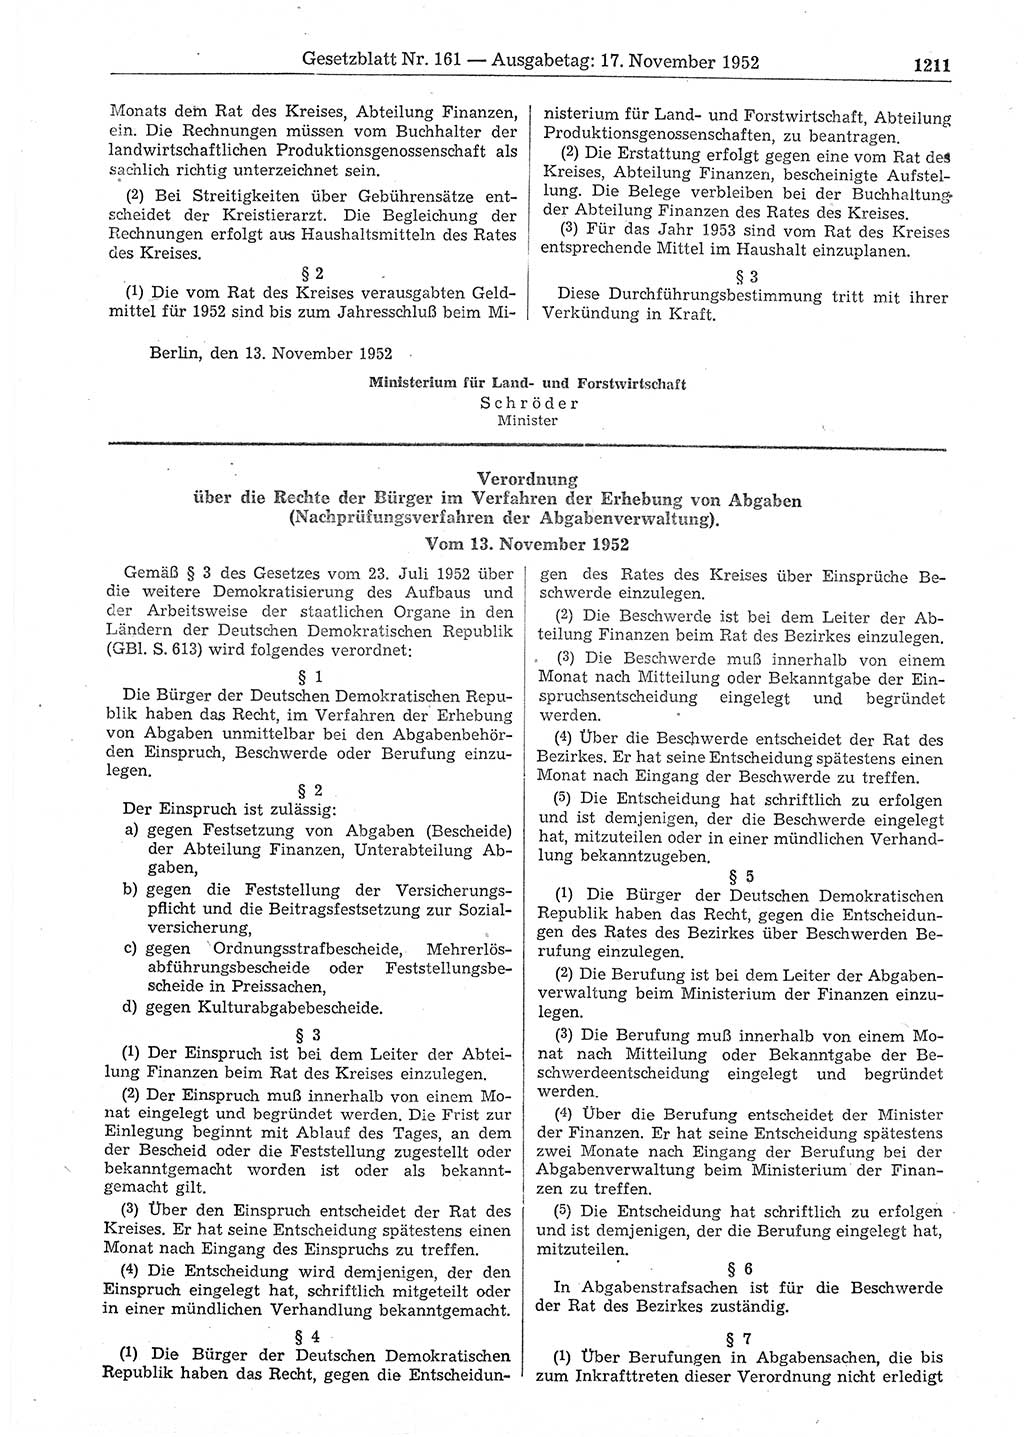 Gesetzblatt (GBl.) der Deutschen Demokratischen Republik (DDR) 1952, Seite 1211 (GBl. DDR 1952, S. 1211)